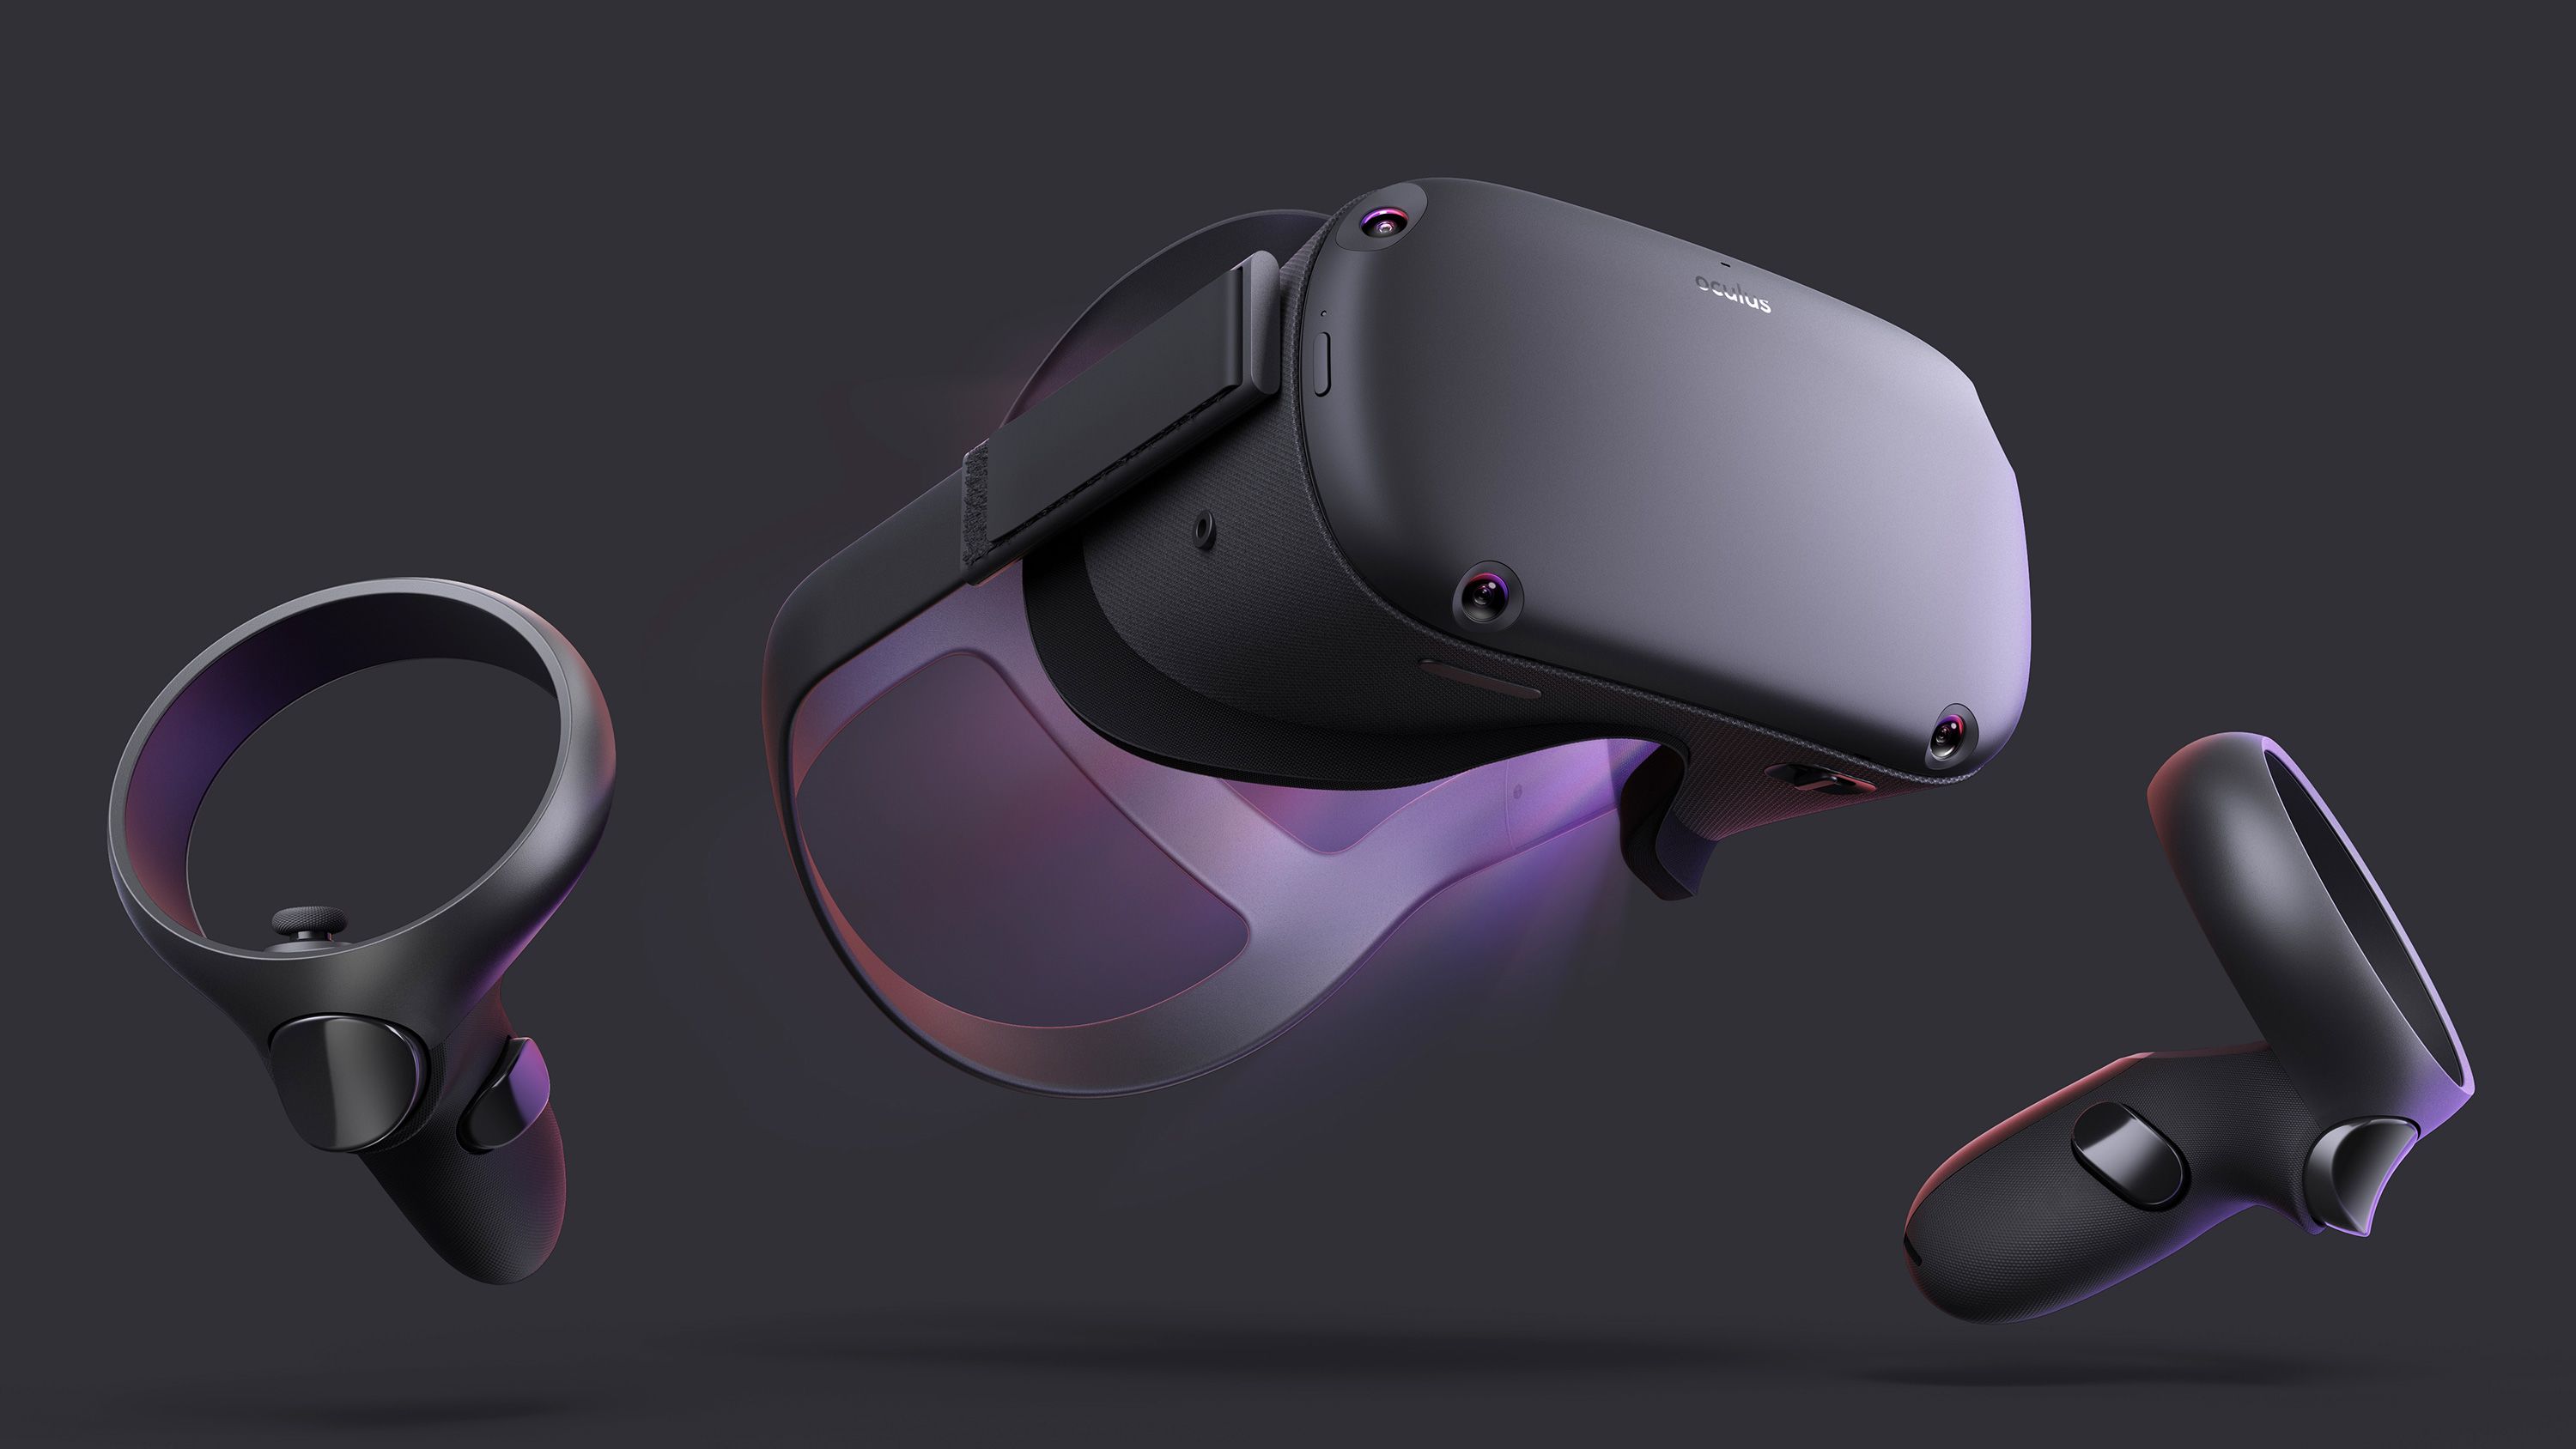 Du bliver bedre hensigt Skrøbelig The Oculus Quest headset shows how far VR has come. It's still not enough |  CNN Business